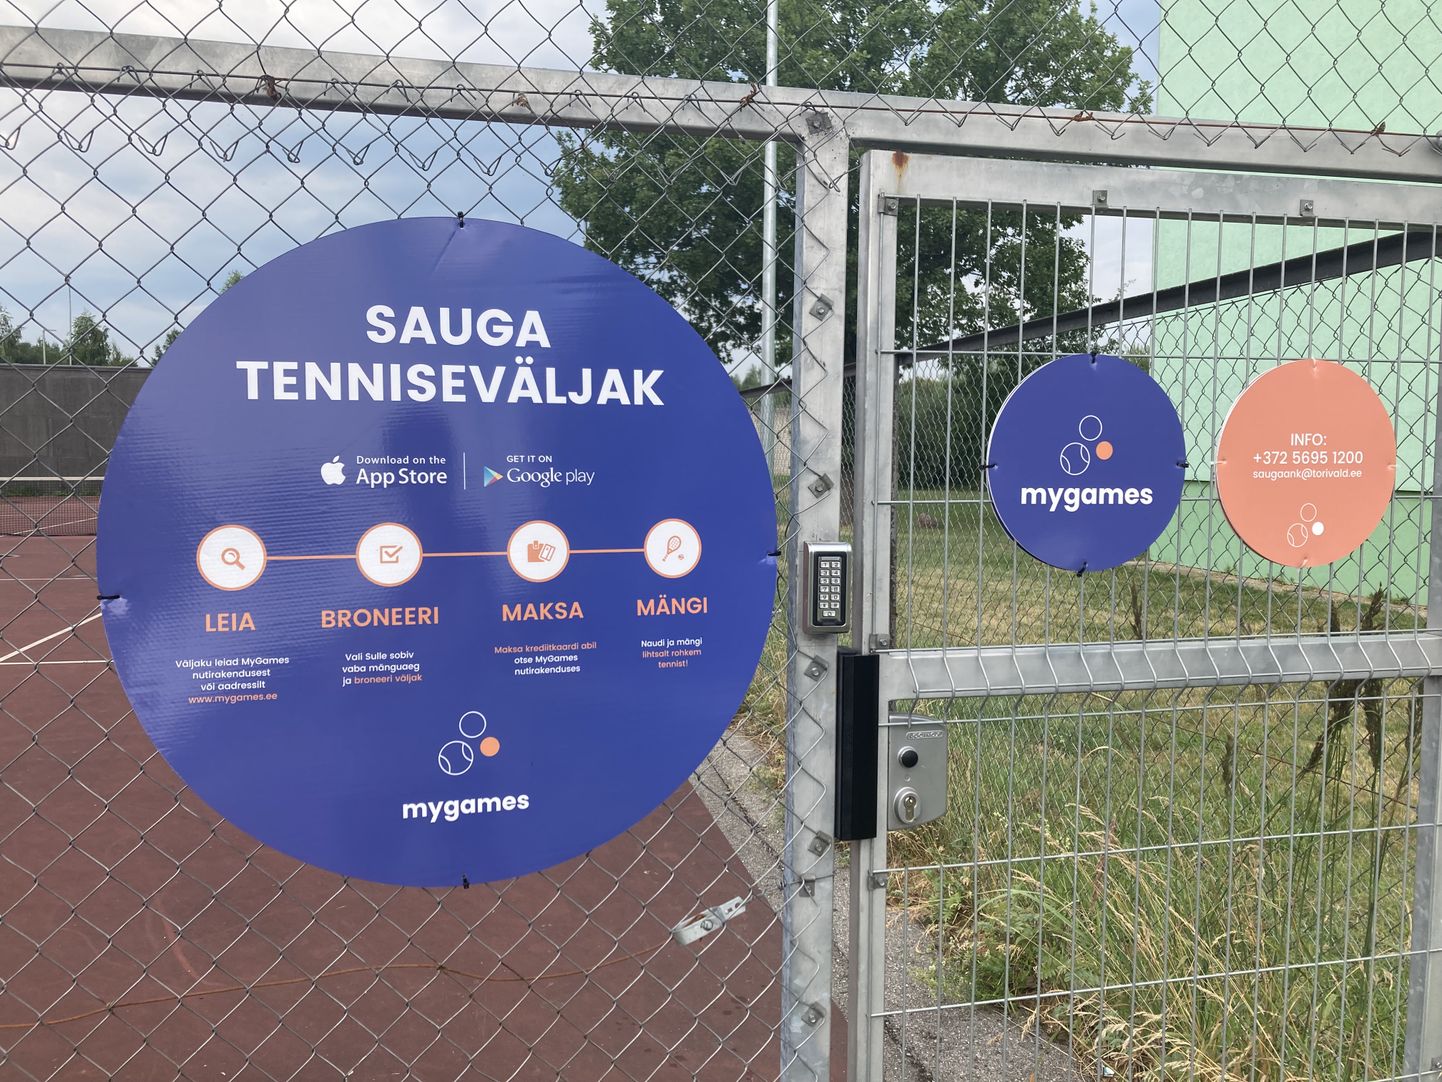 Täielikult automatiseeritud iseteeninduslik tenniseväljak Saugas.